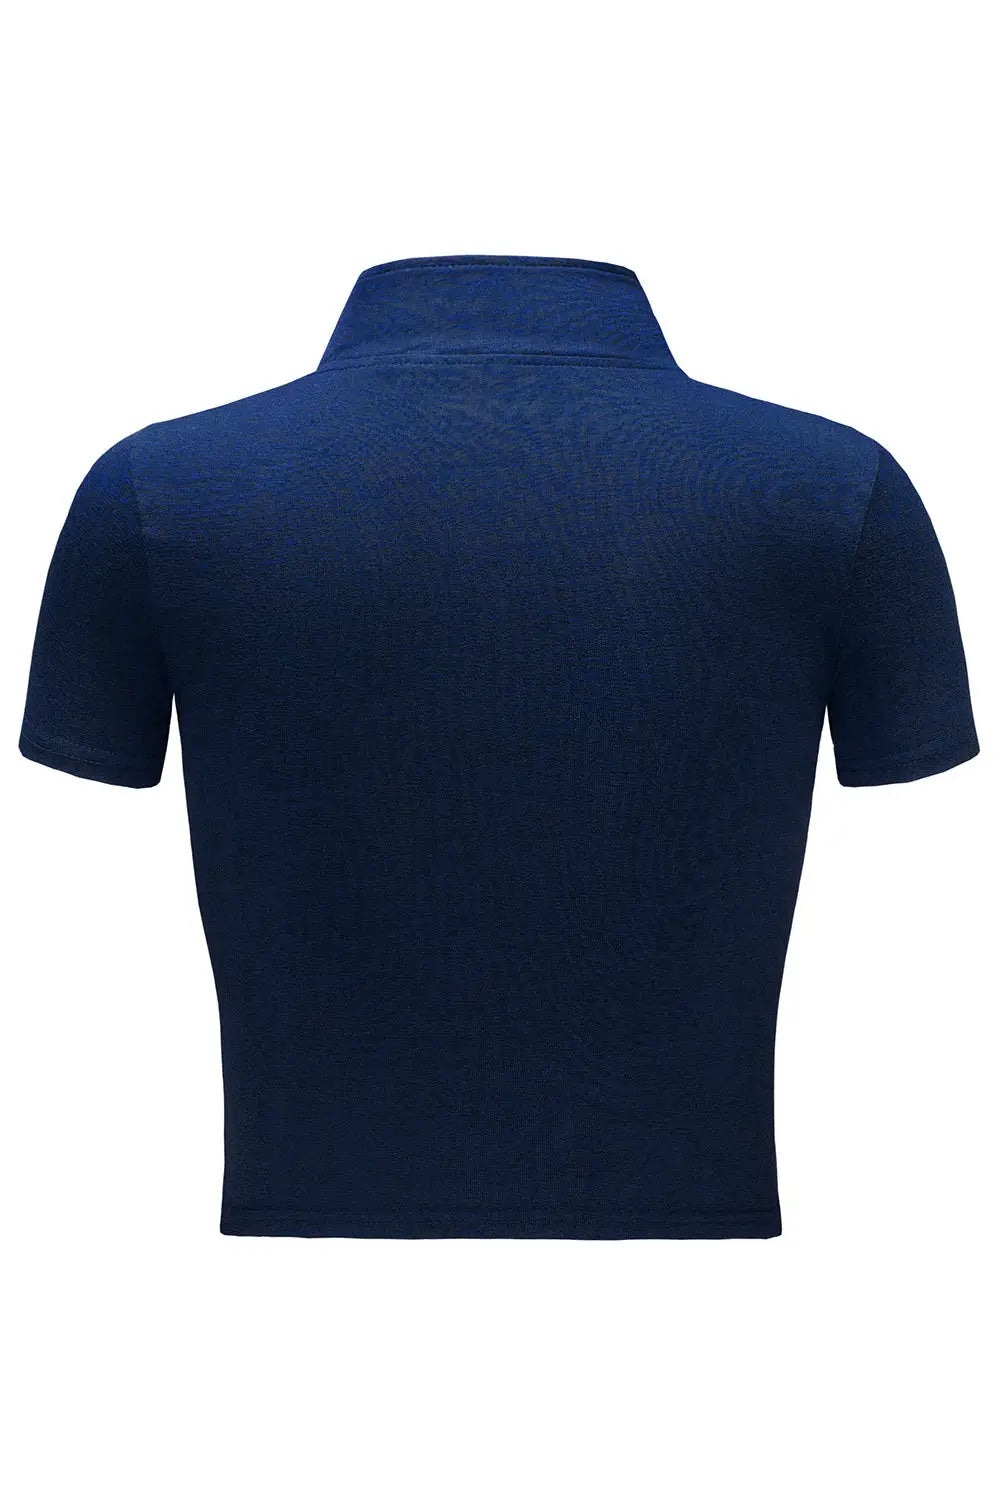 Blue Half Zipper Short Sleeve Active Crop Top - Activewear